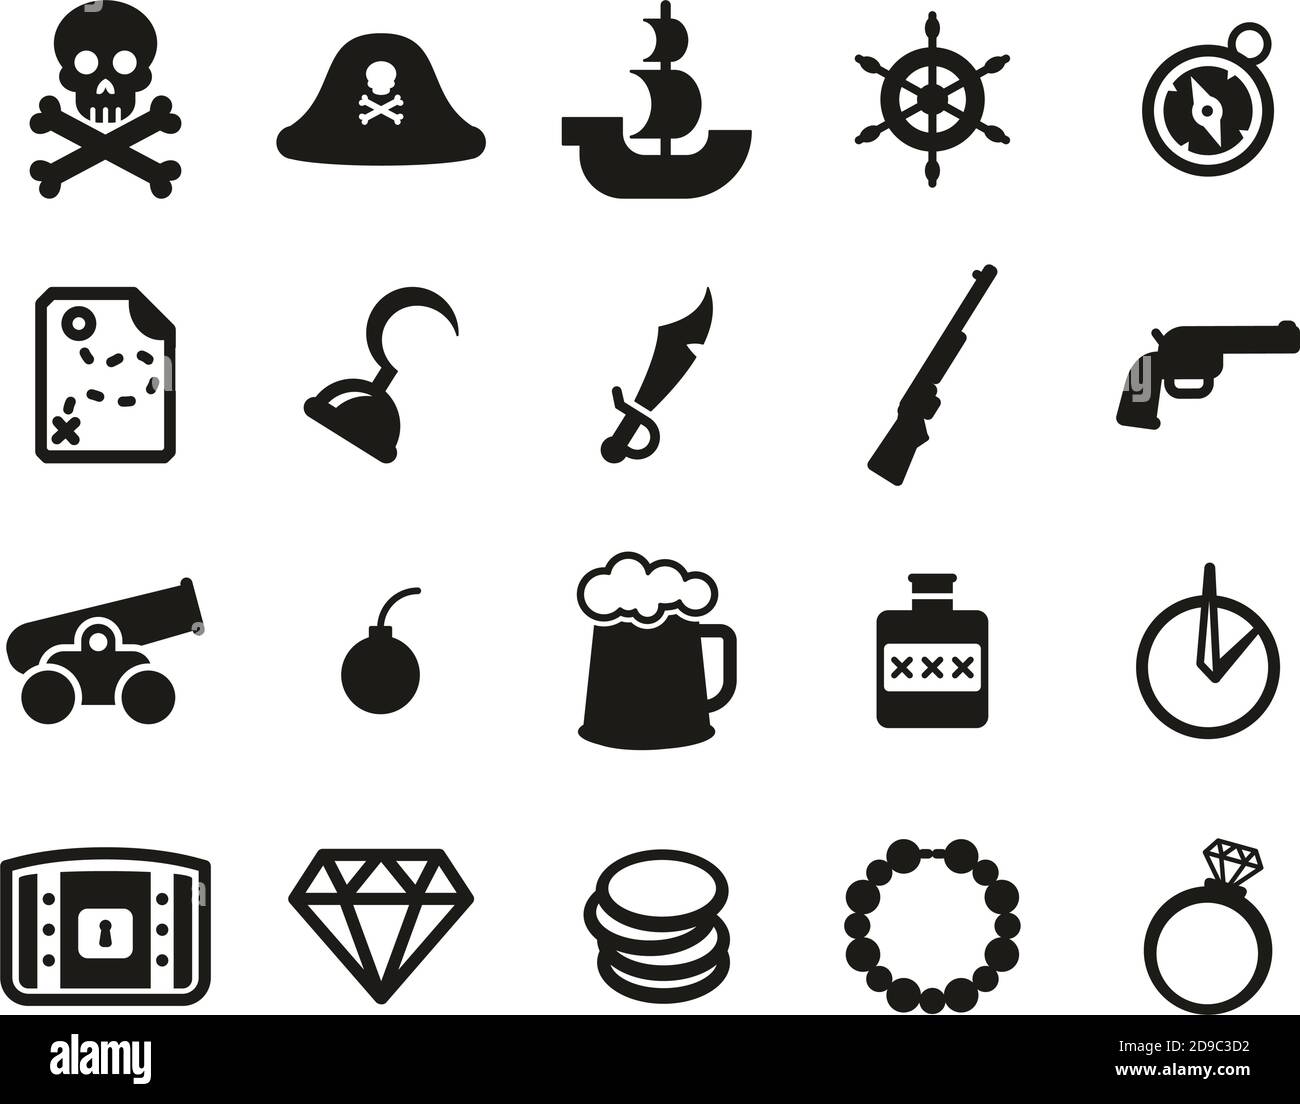 Piratenflagge Vektorgrafiken und Vektor-Icons zum kostenlosen Download